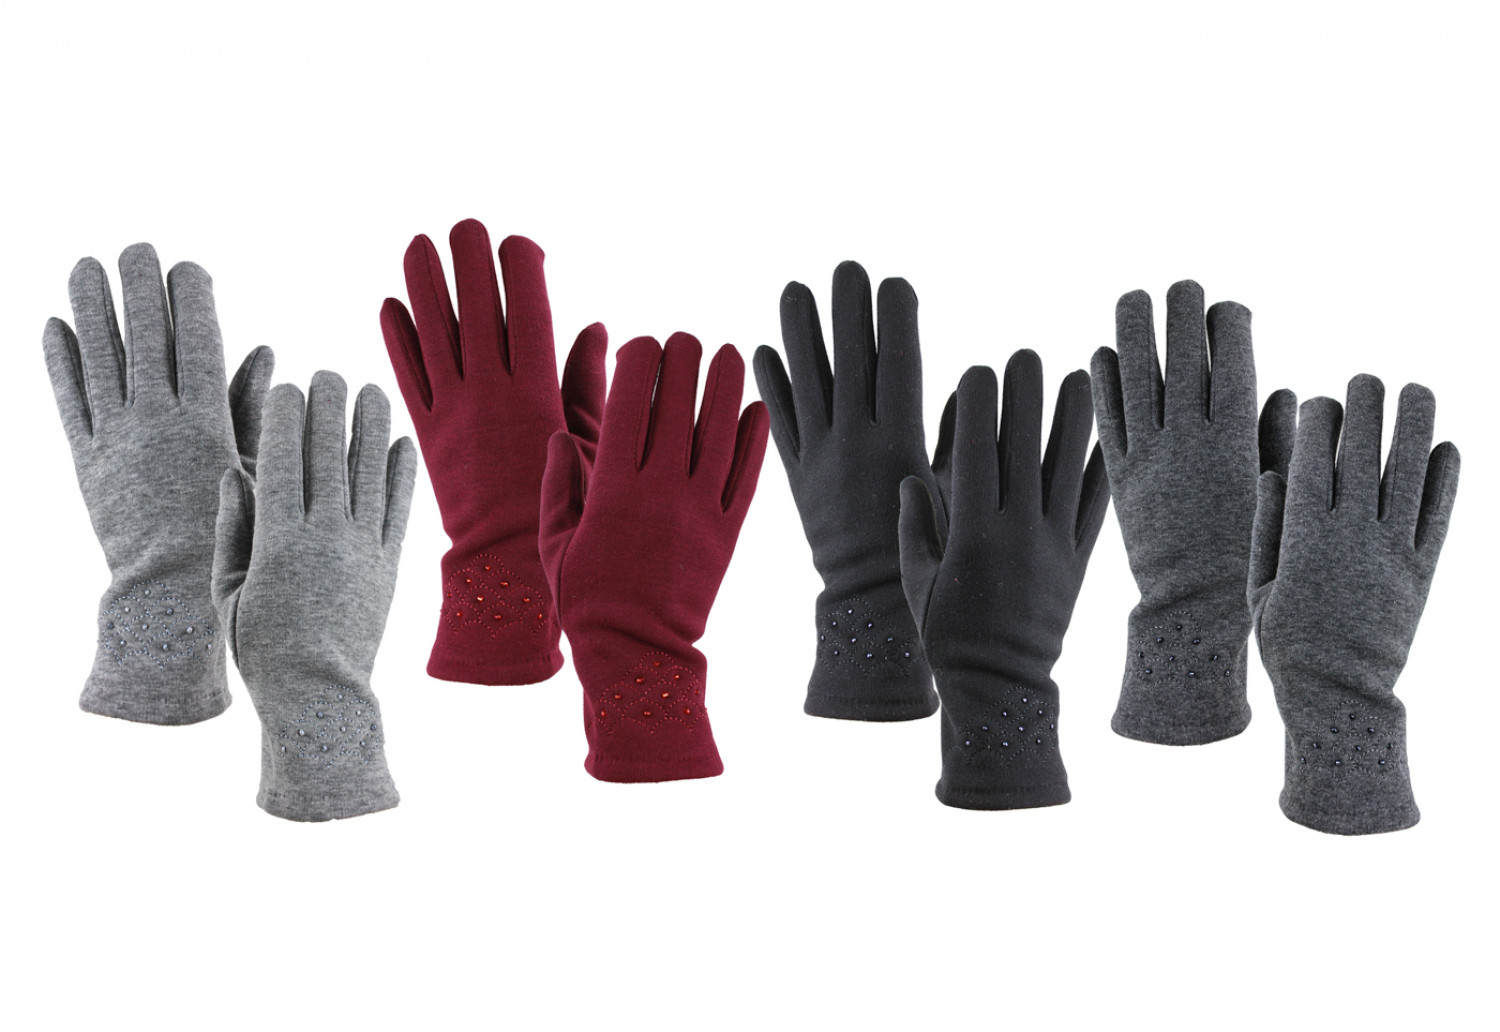 Gloves W1710